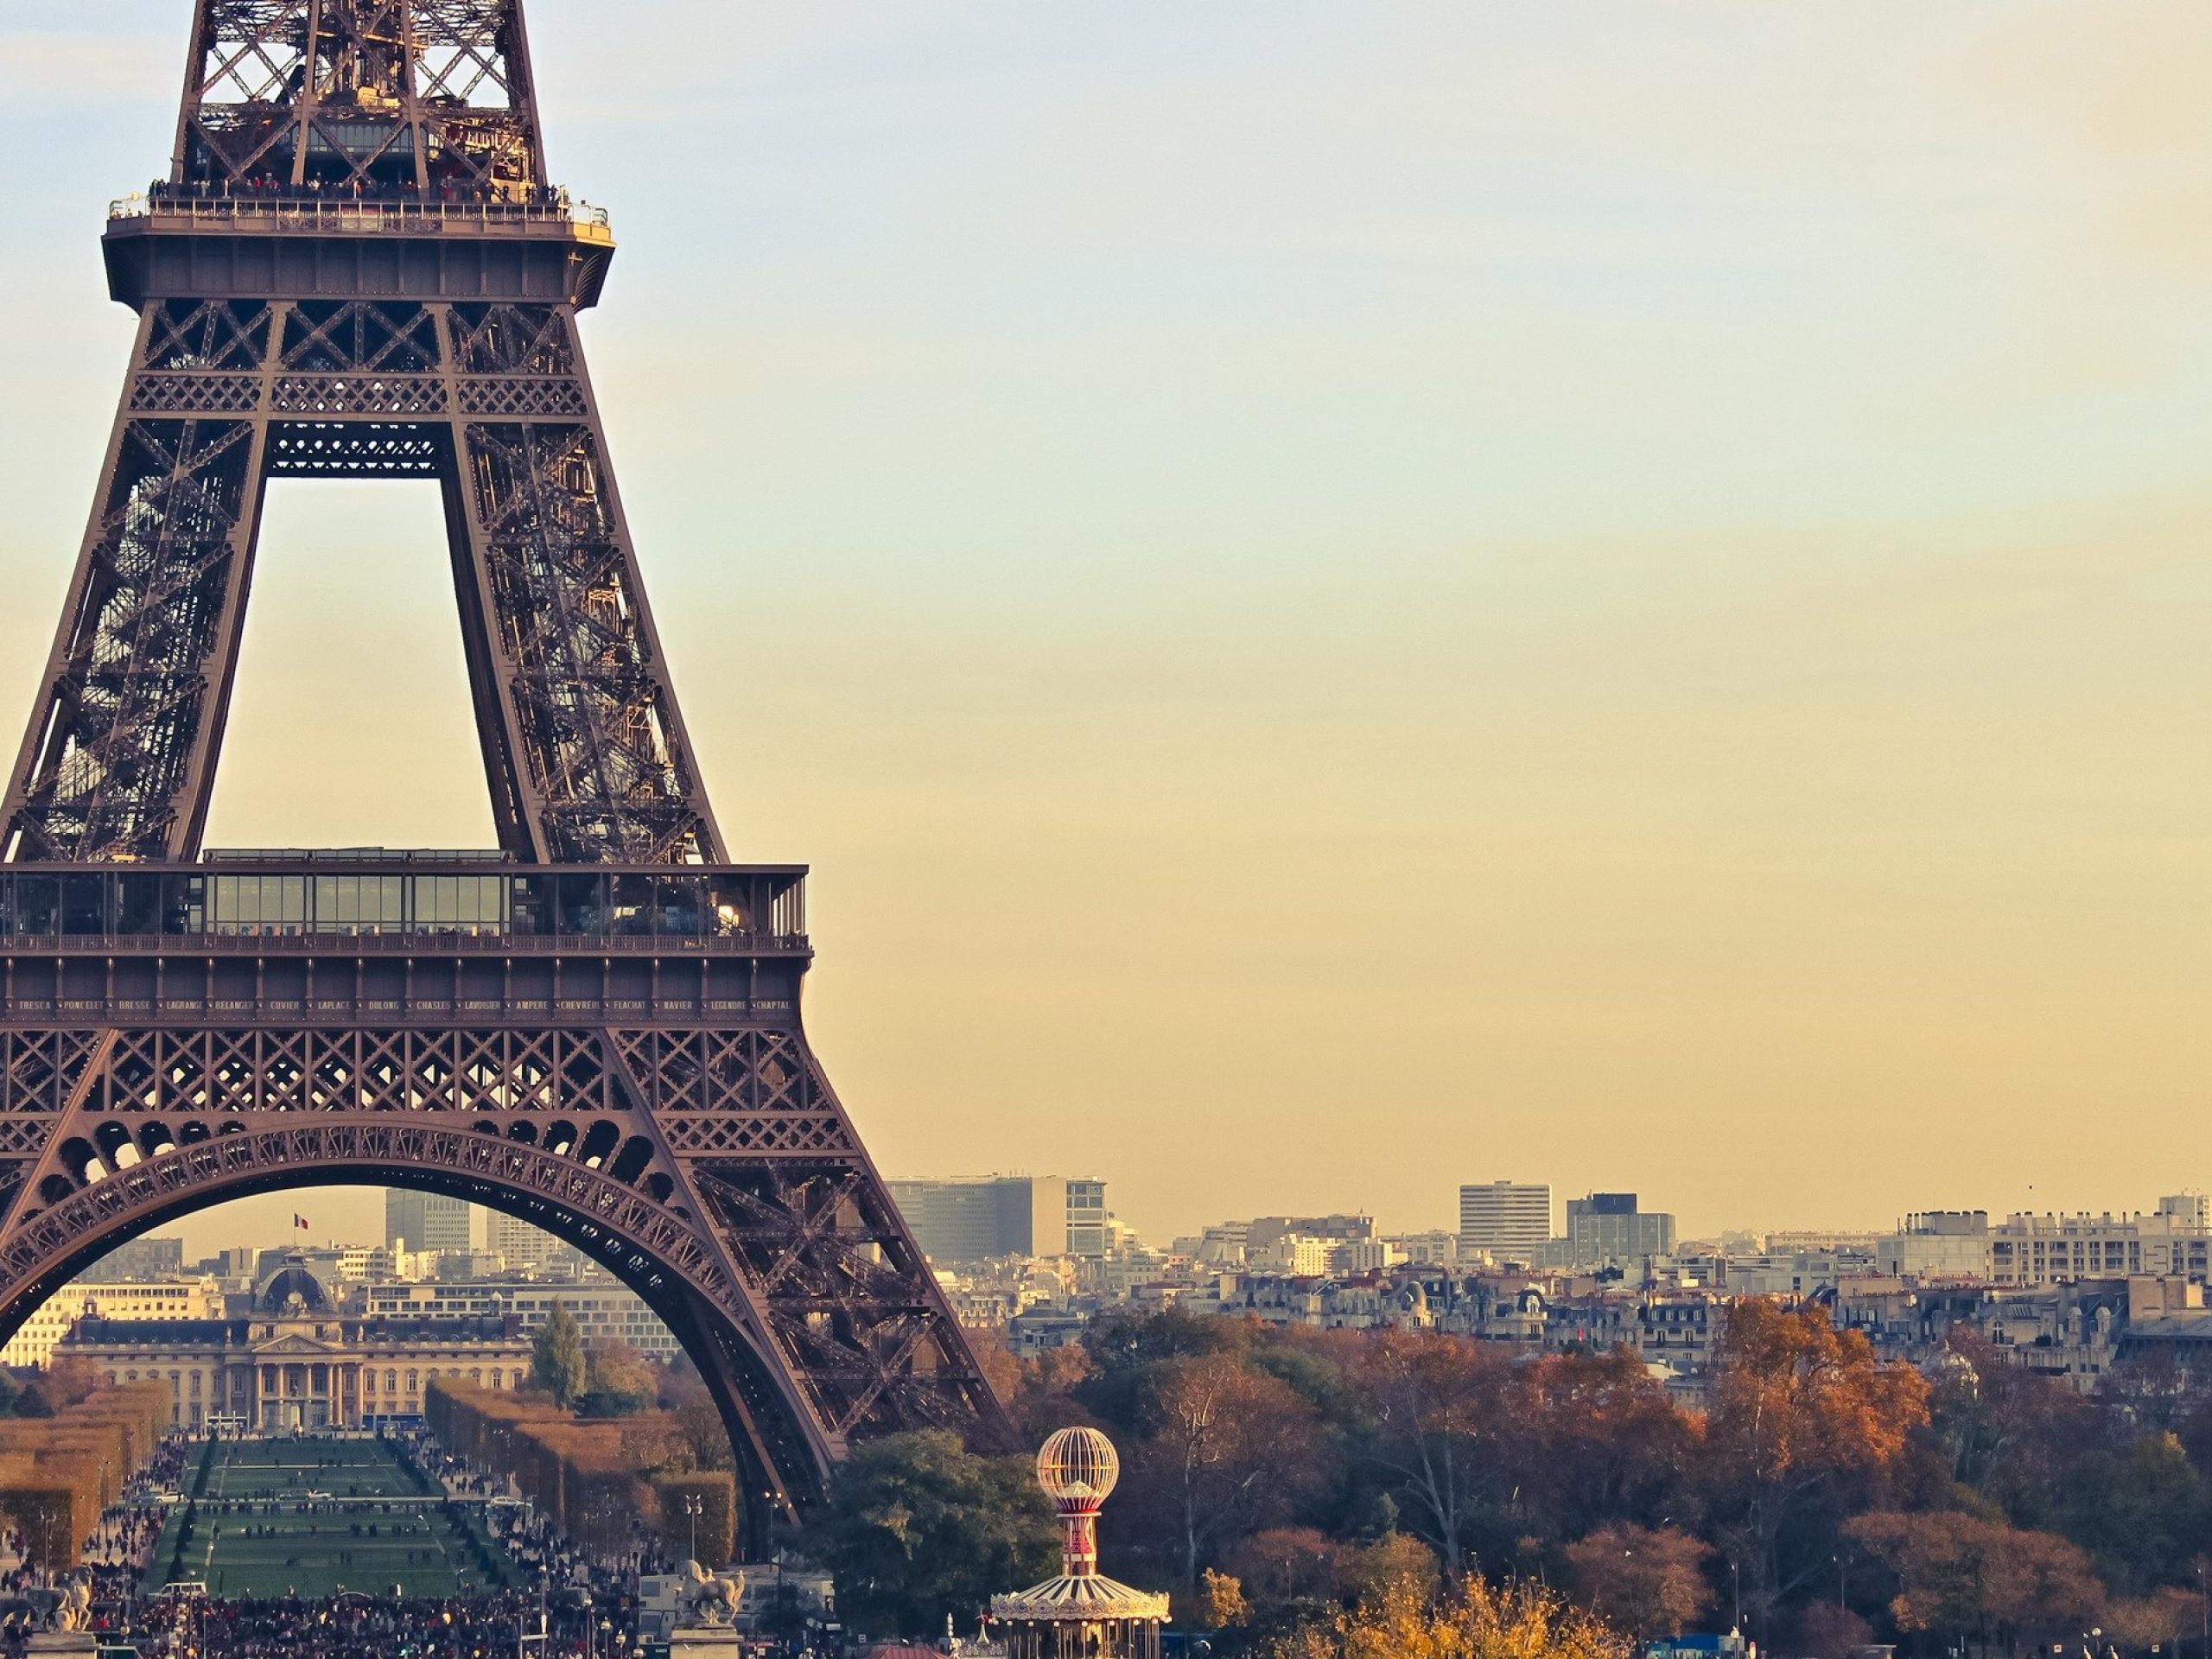 Hình nền desktop Paris đẹp như trong tranh làm bạn muốn ngồi trước máy tính mãi mãi. Hãy cập nhật cho mình một bộ sưu tập hình ảnh về thành phố tình yêu cao quý này để luôn có tinh thần làm việc và học hành thoải mái.